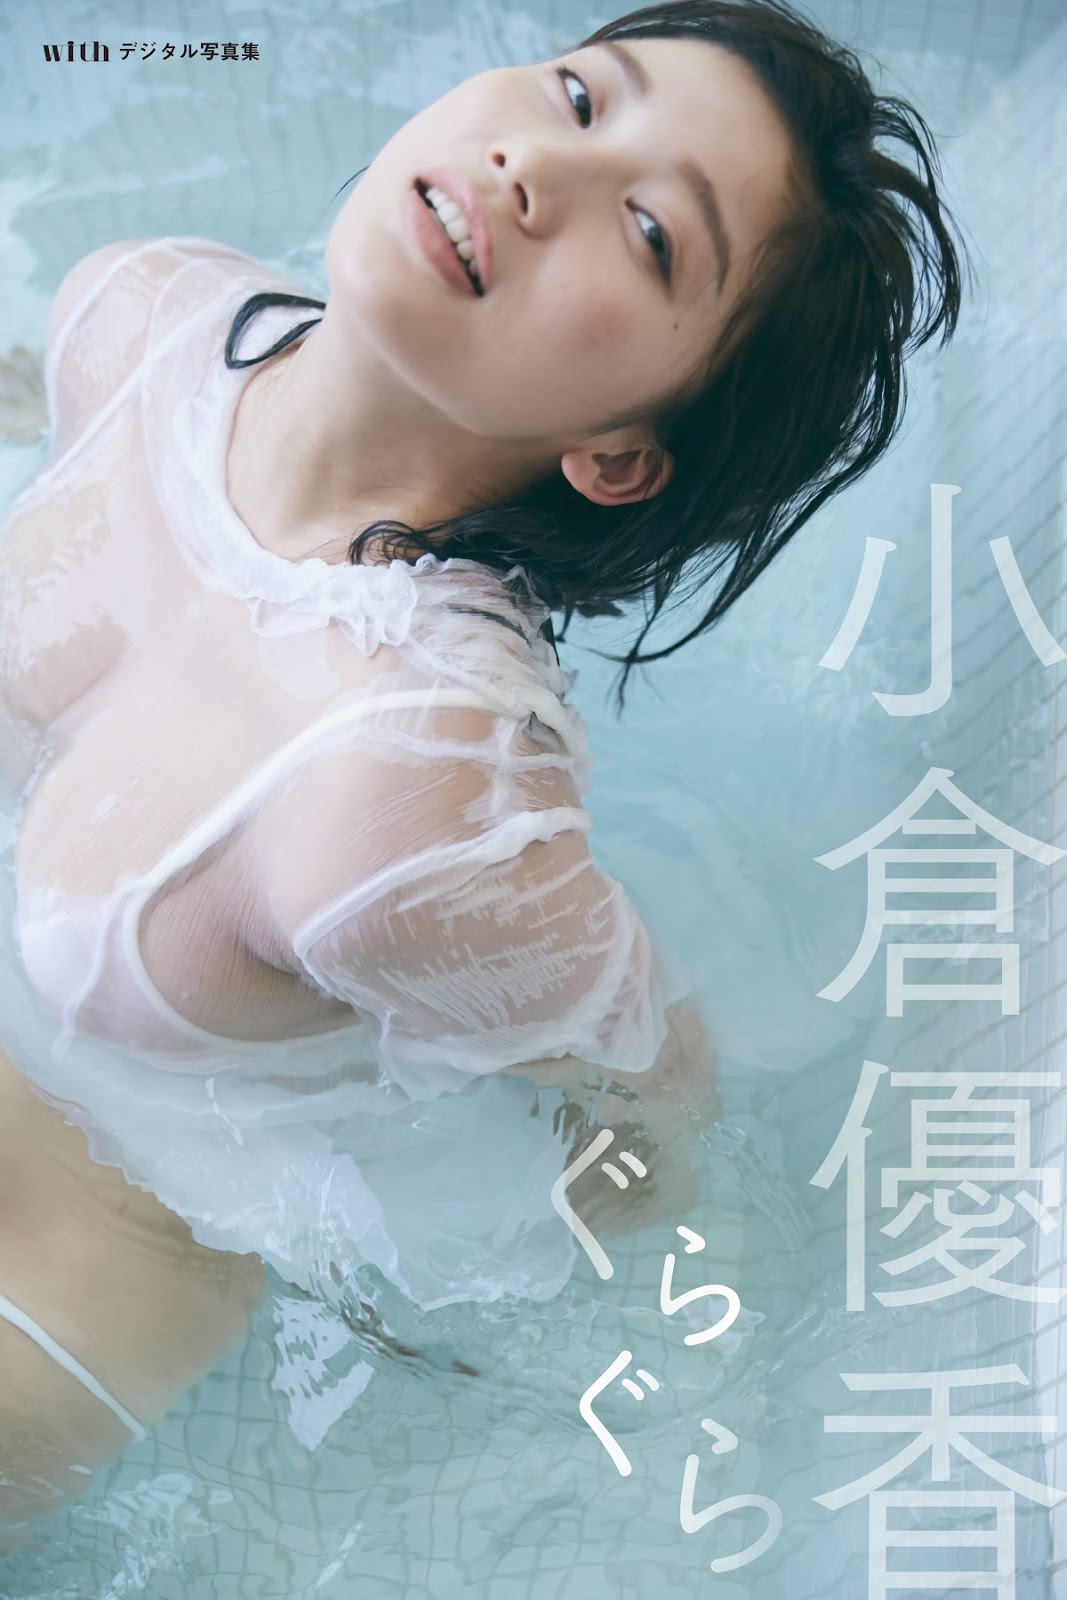 小仓优香, With Magazine 2018.08.27